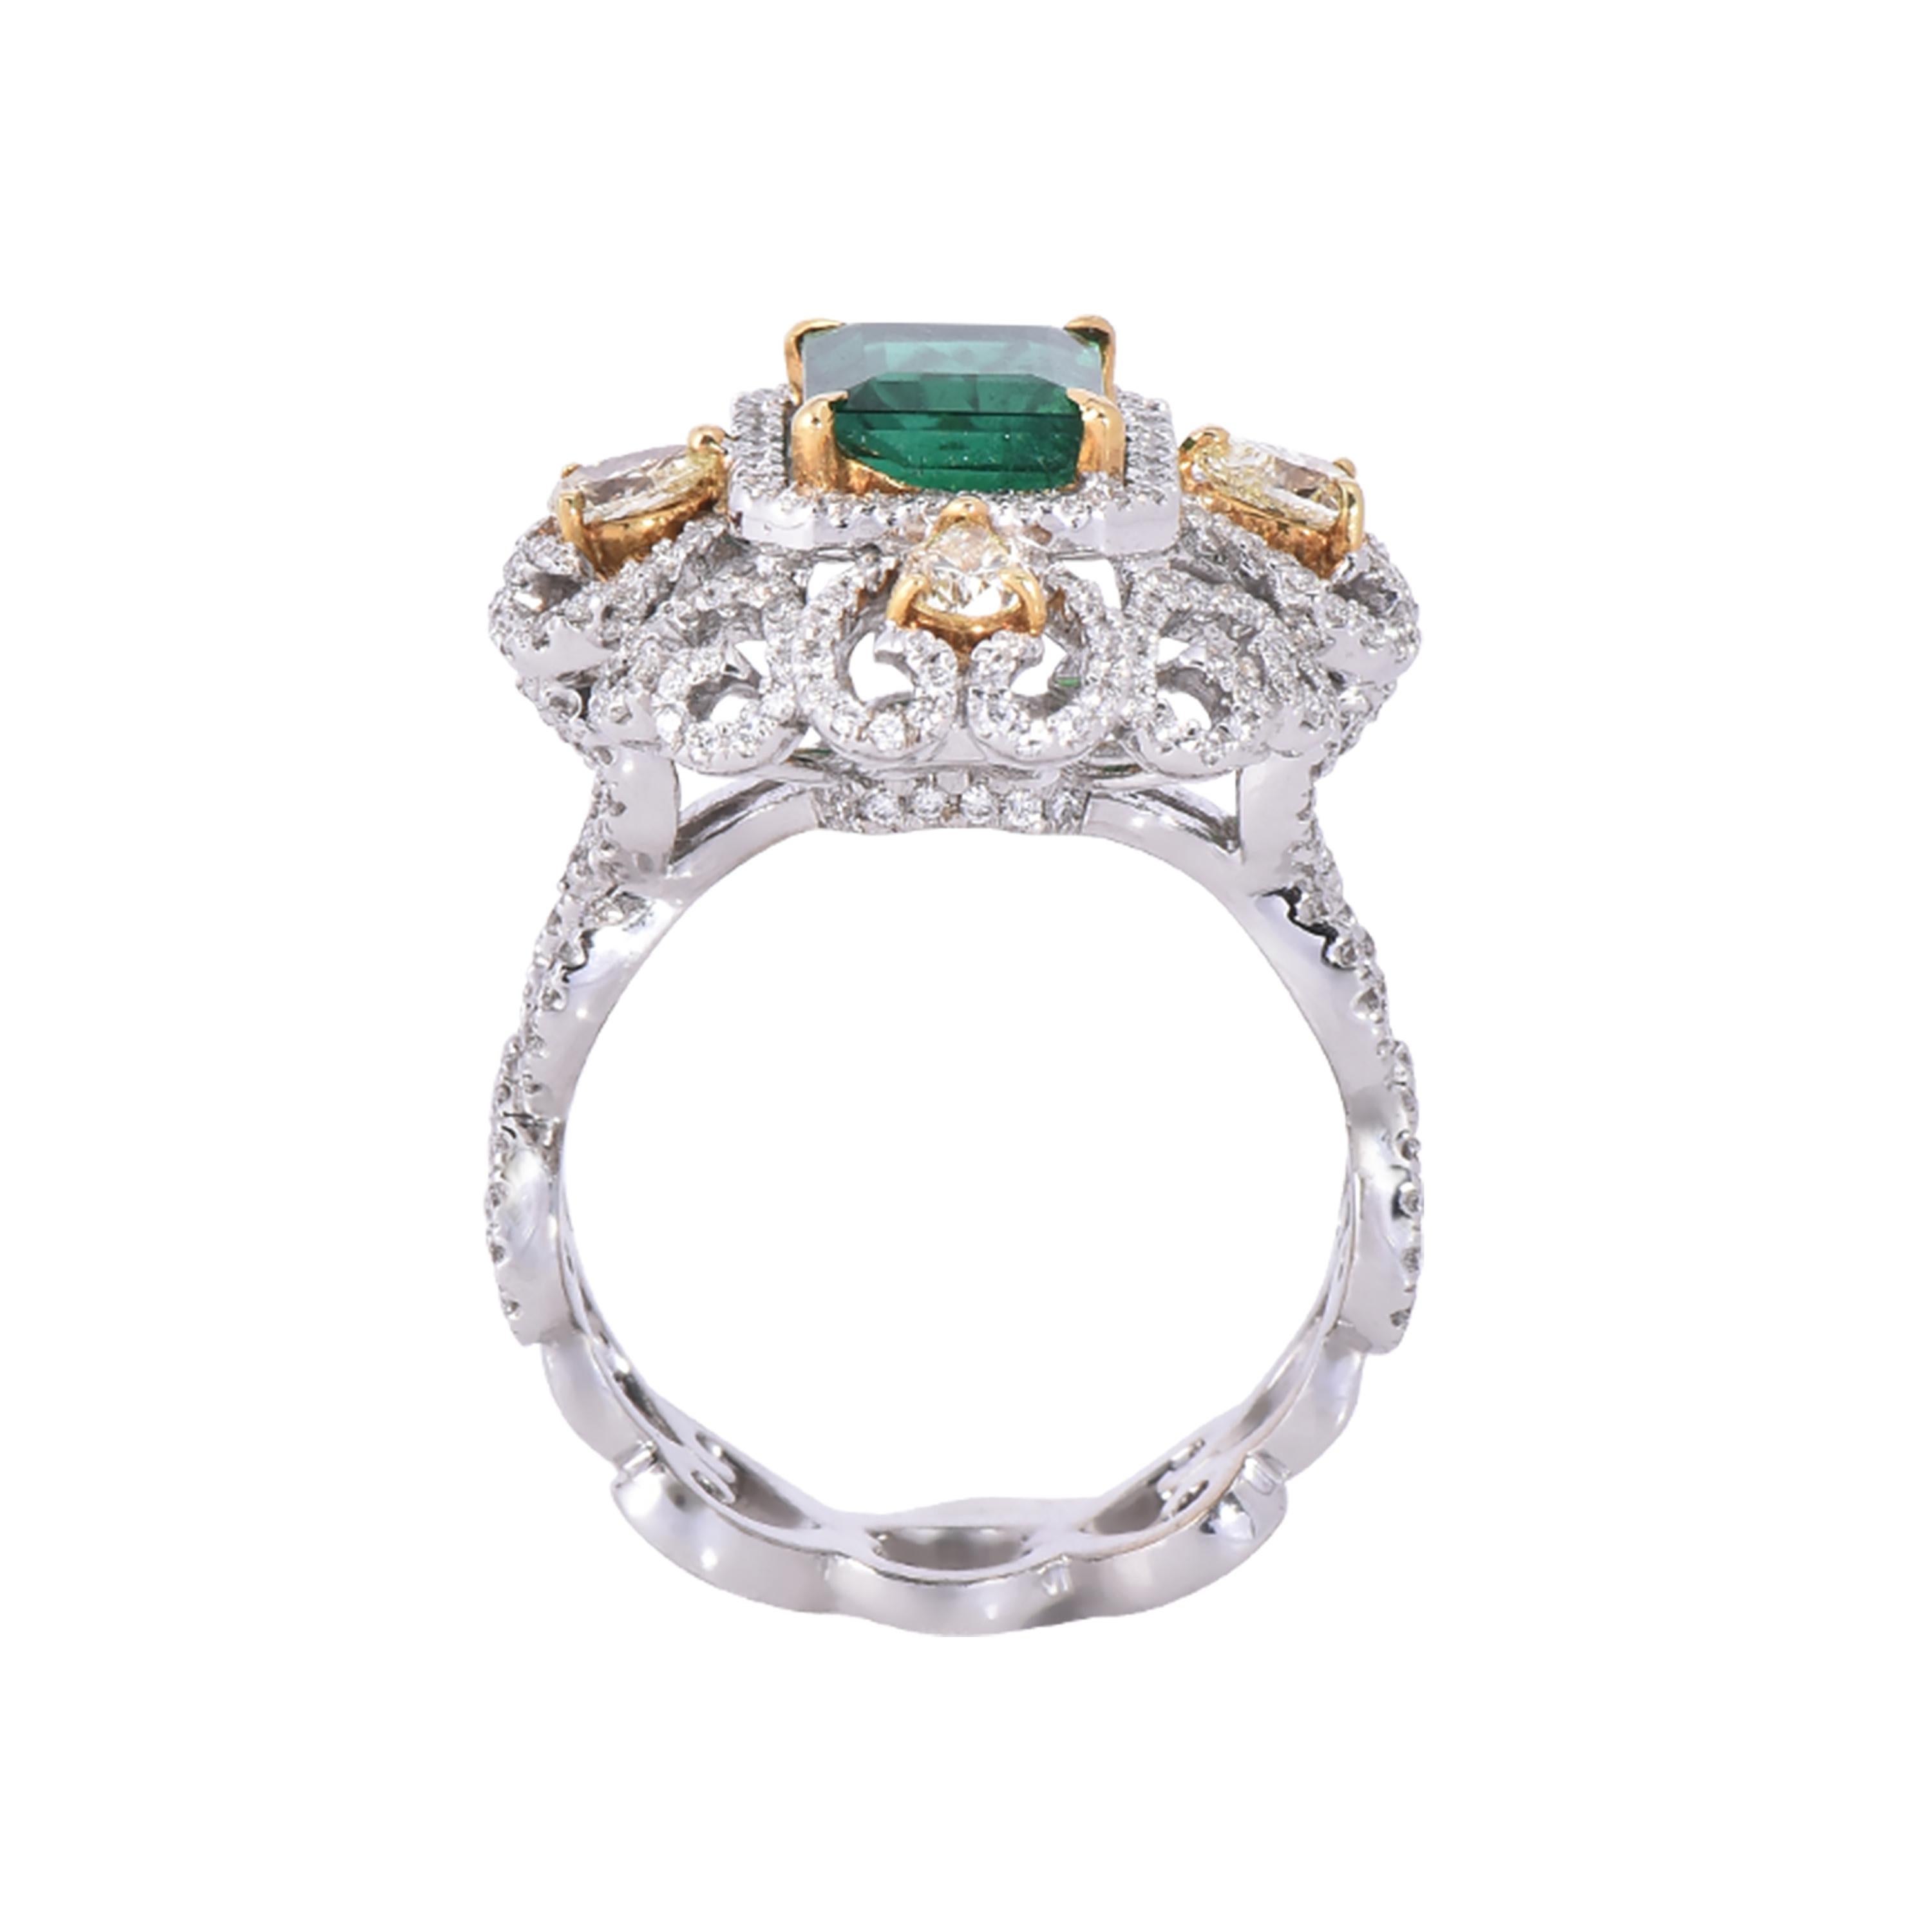 Laviere Emerald and Diamond Art Deco Style Ring In New Condition For Sale In Dubai, Dubai